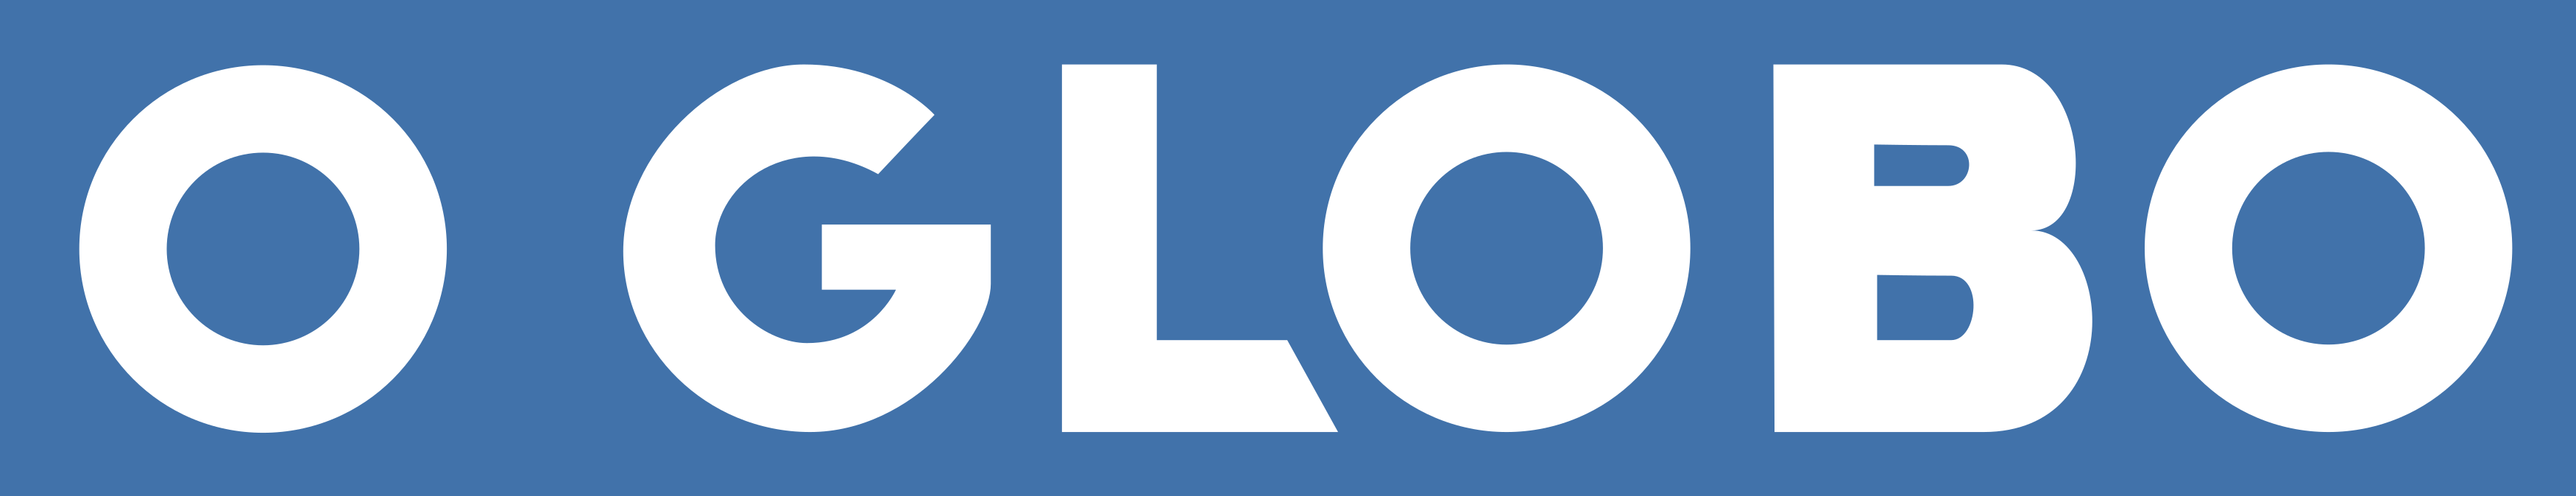 O Globo Logo.